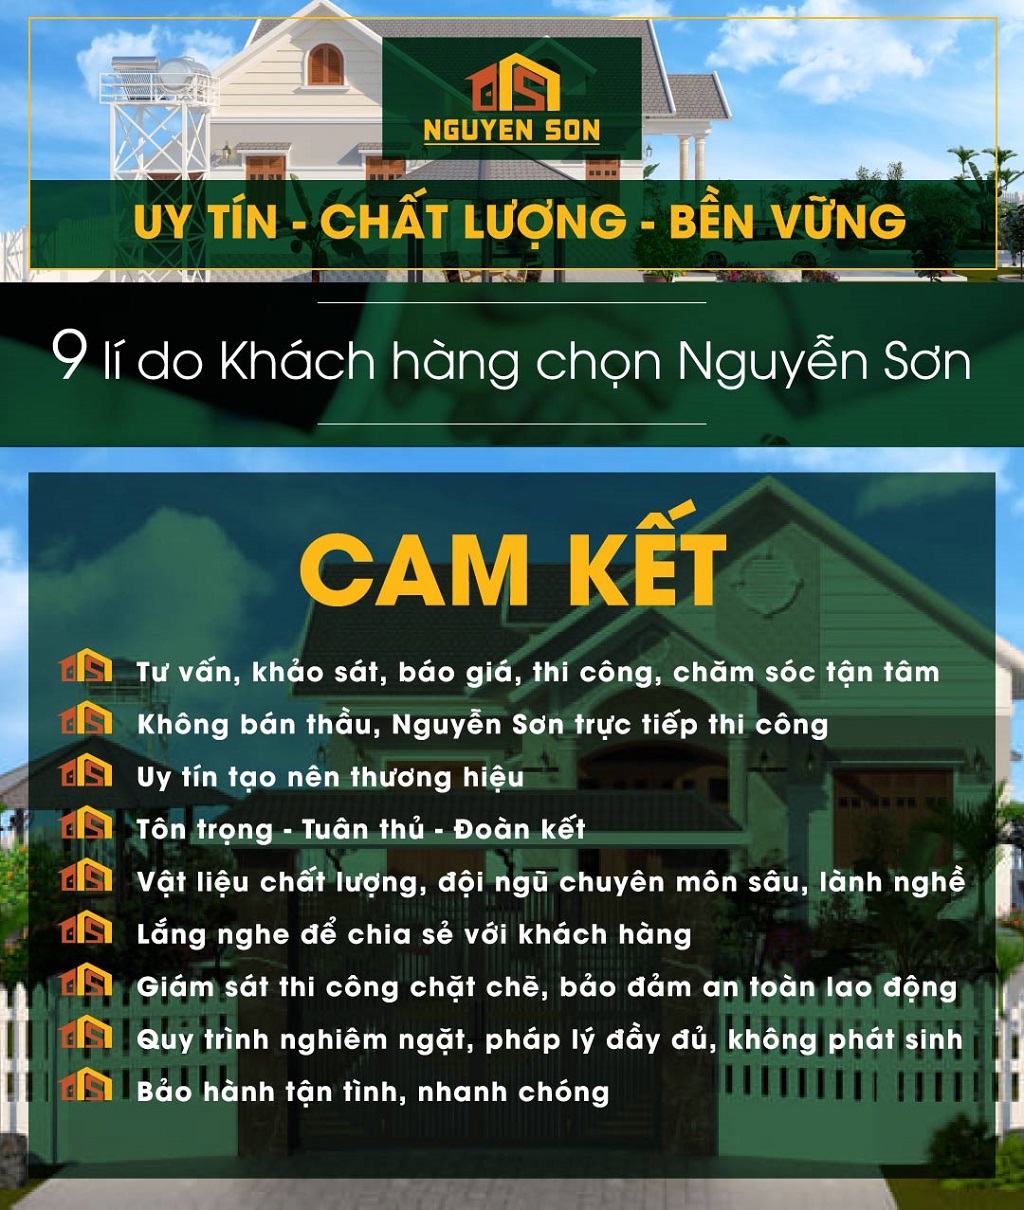 Lý do nên lựa chọn Xây Dựng Nguyễn Sơn